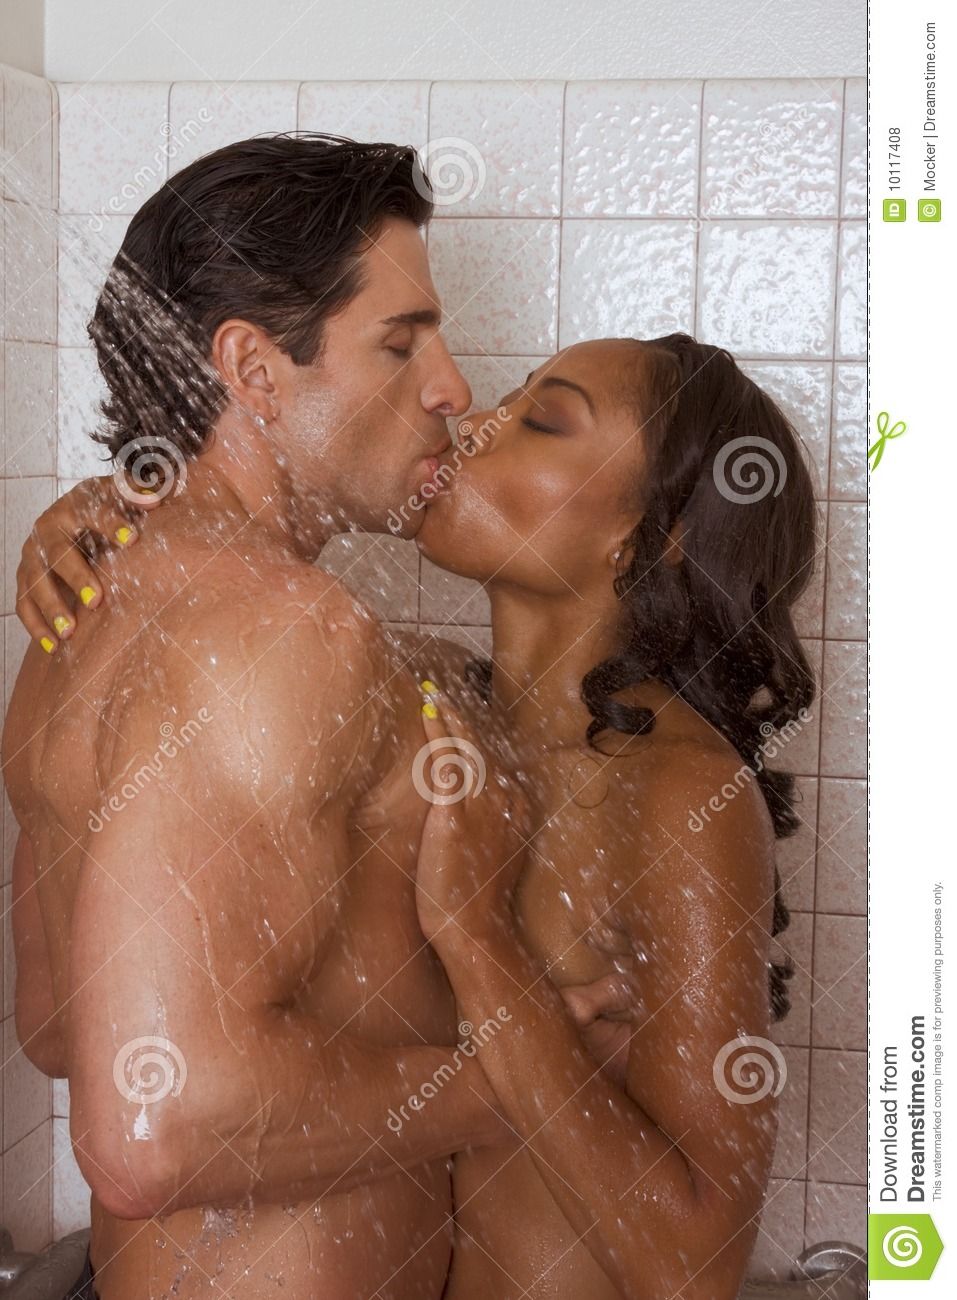 Naked black women in the shower